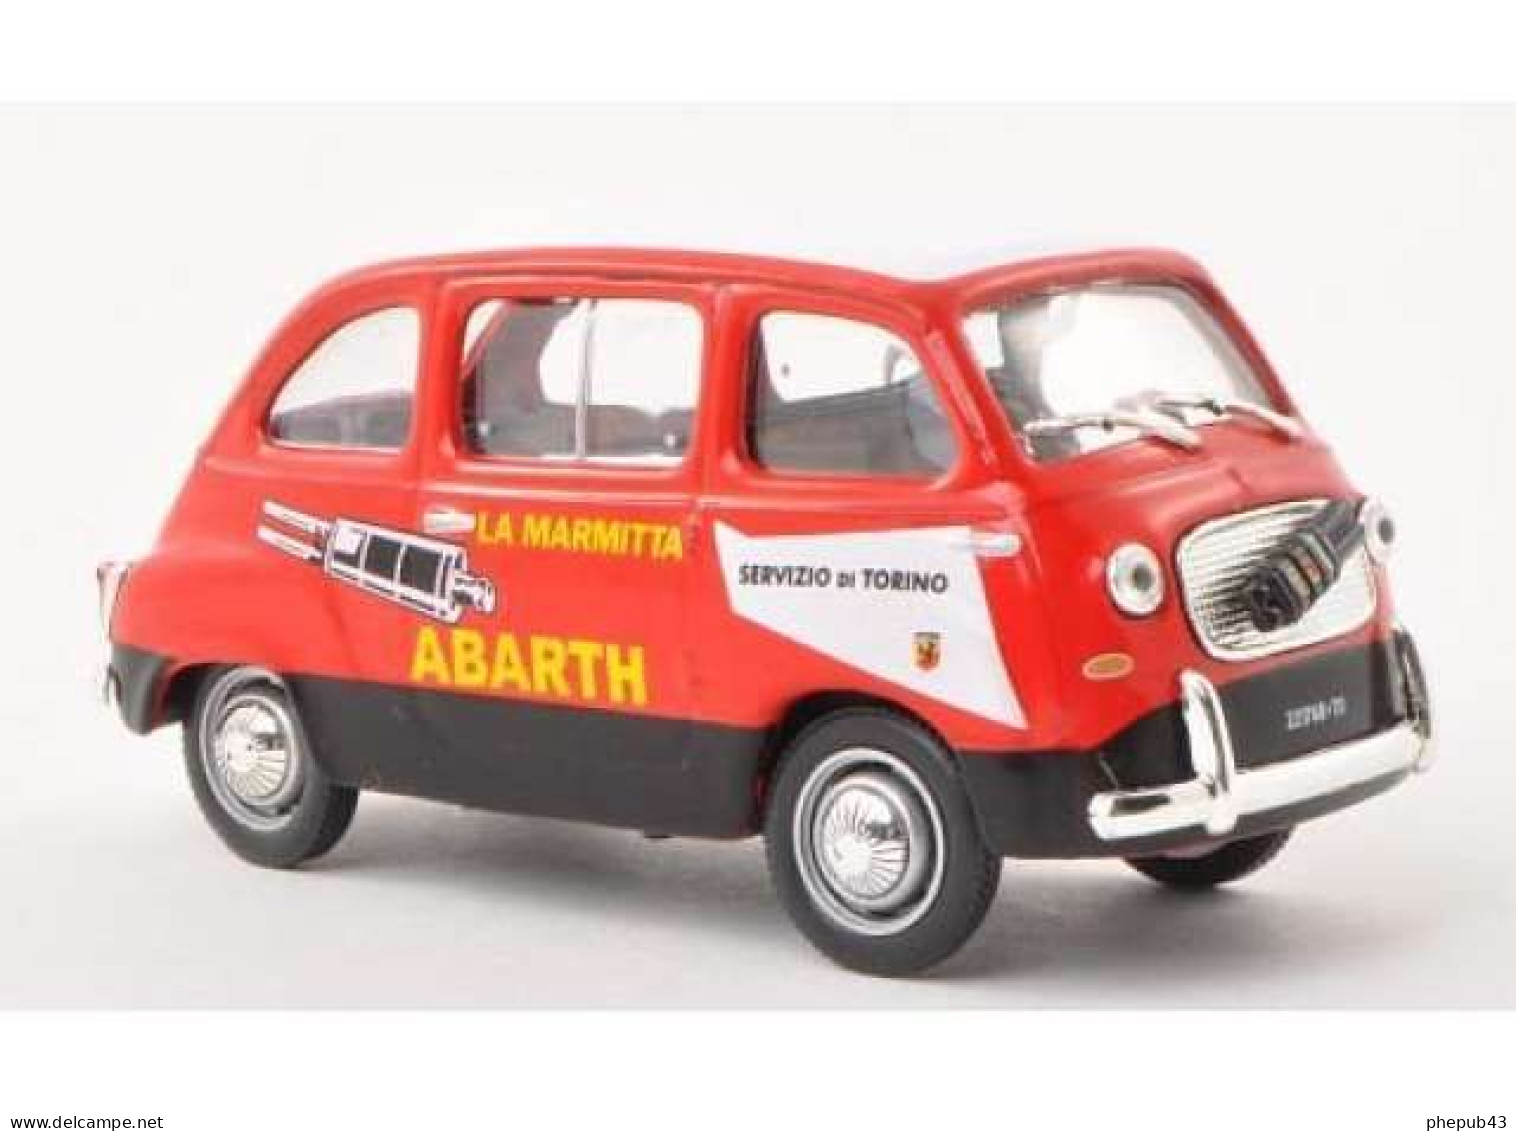 Fiat 750 Multipla Abarth - Servizio Di Torino - 1960 - Red & Black - Altaya - Autocarri